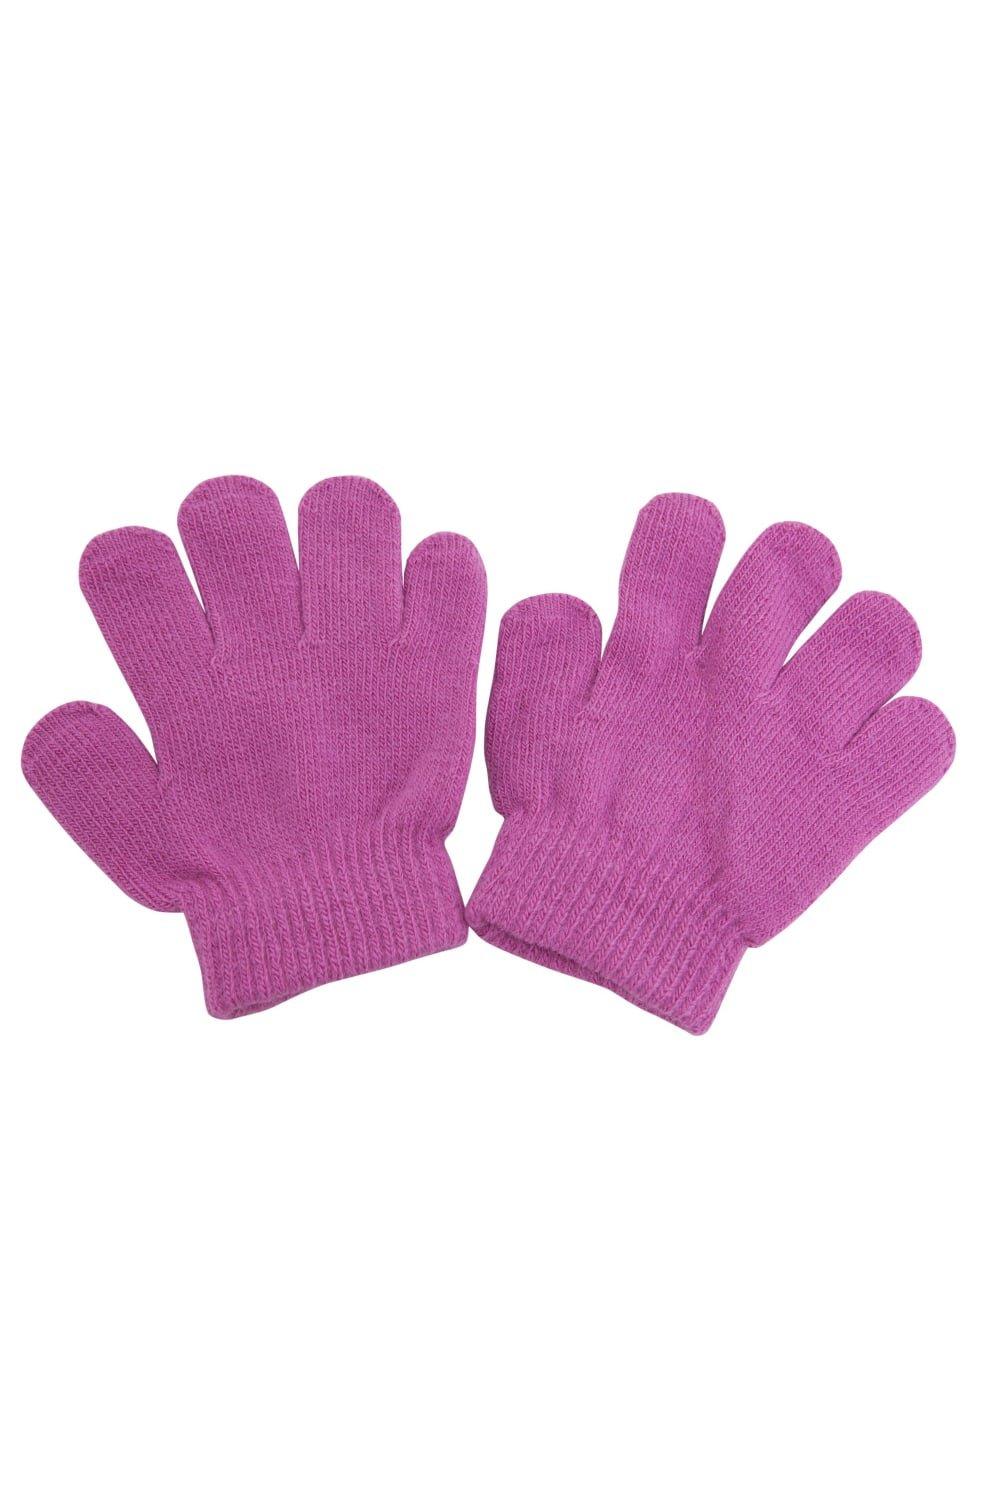 Зимние волшебные перчатки Universal Textiles, розовый распродажа термовязаные зимние перчатки universal textiles серый